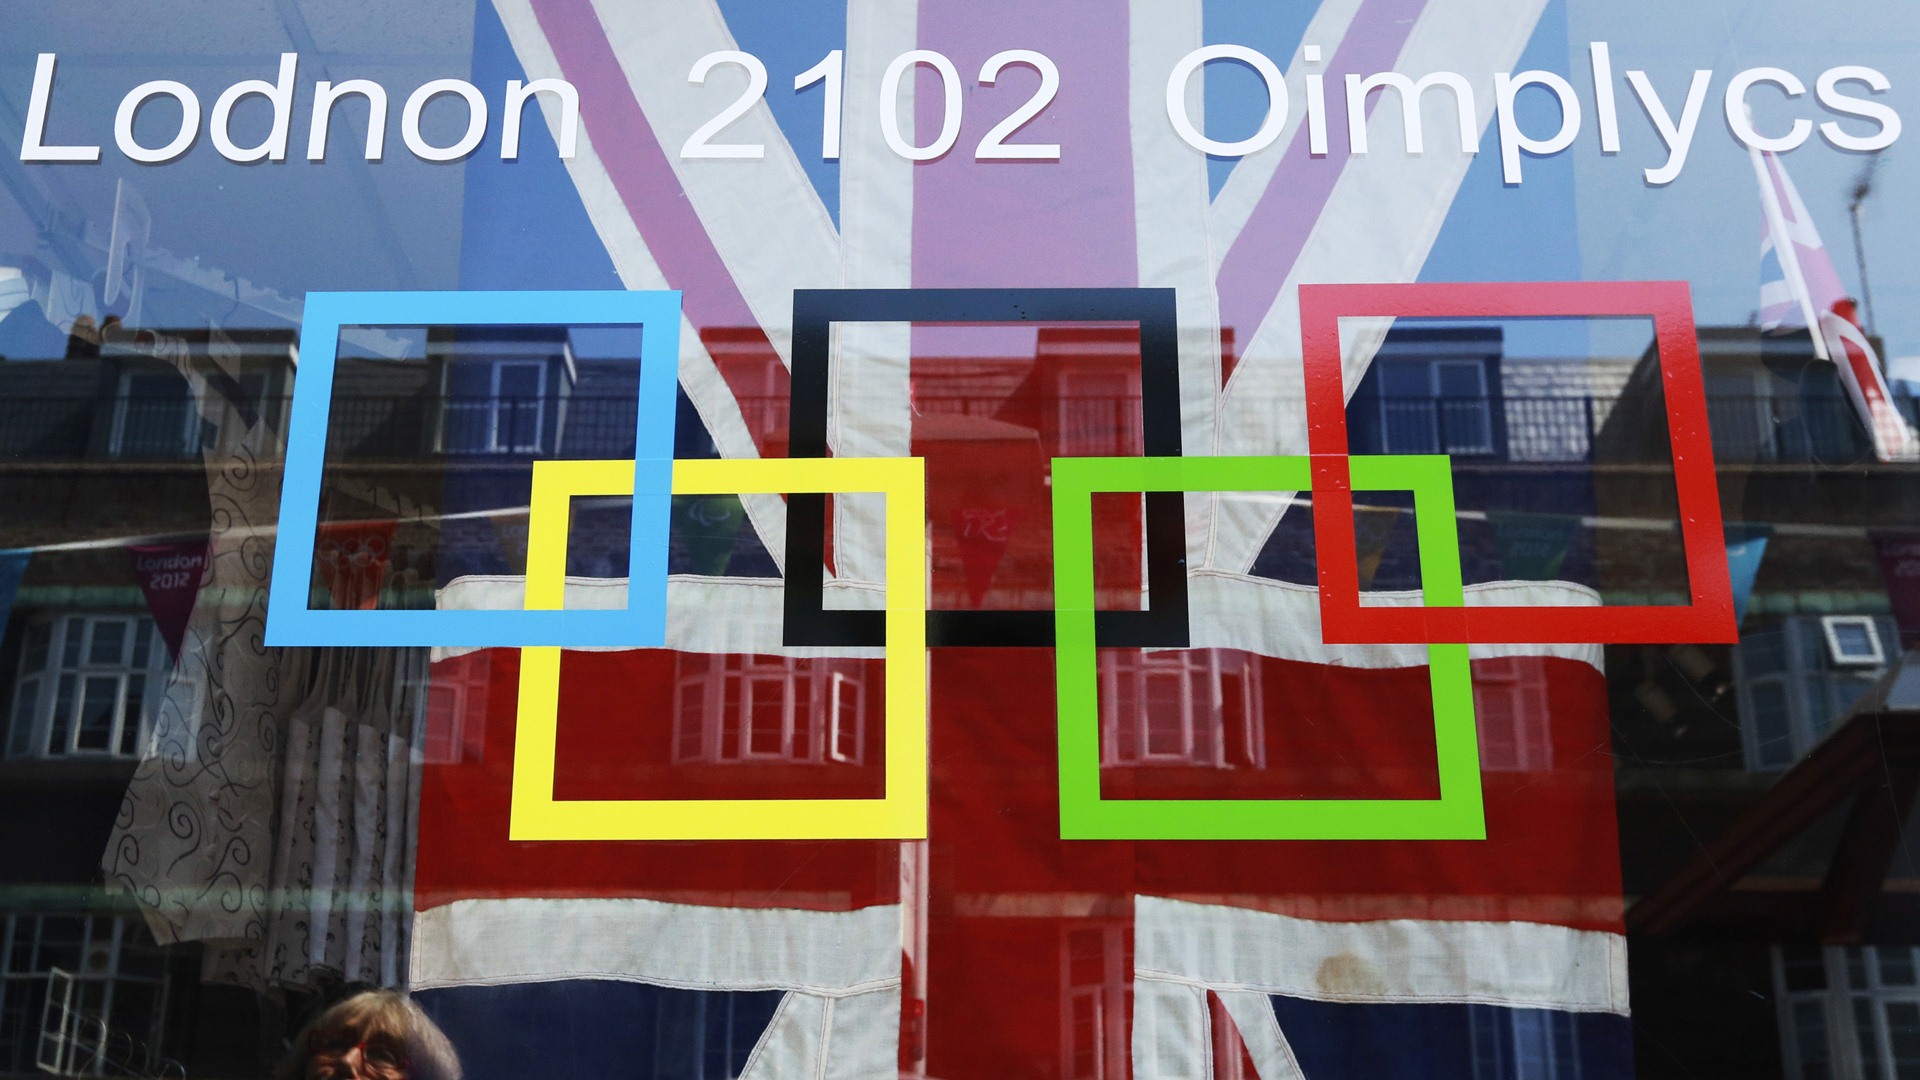 Londres 2012 Olimpiadas fondos temáticos (2) #27 - 1920x1080